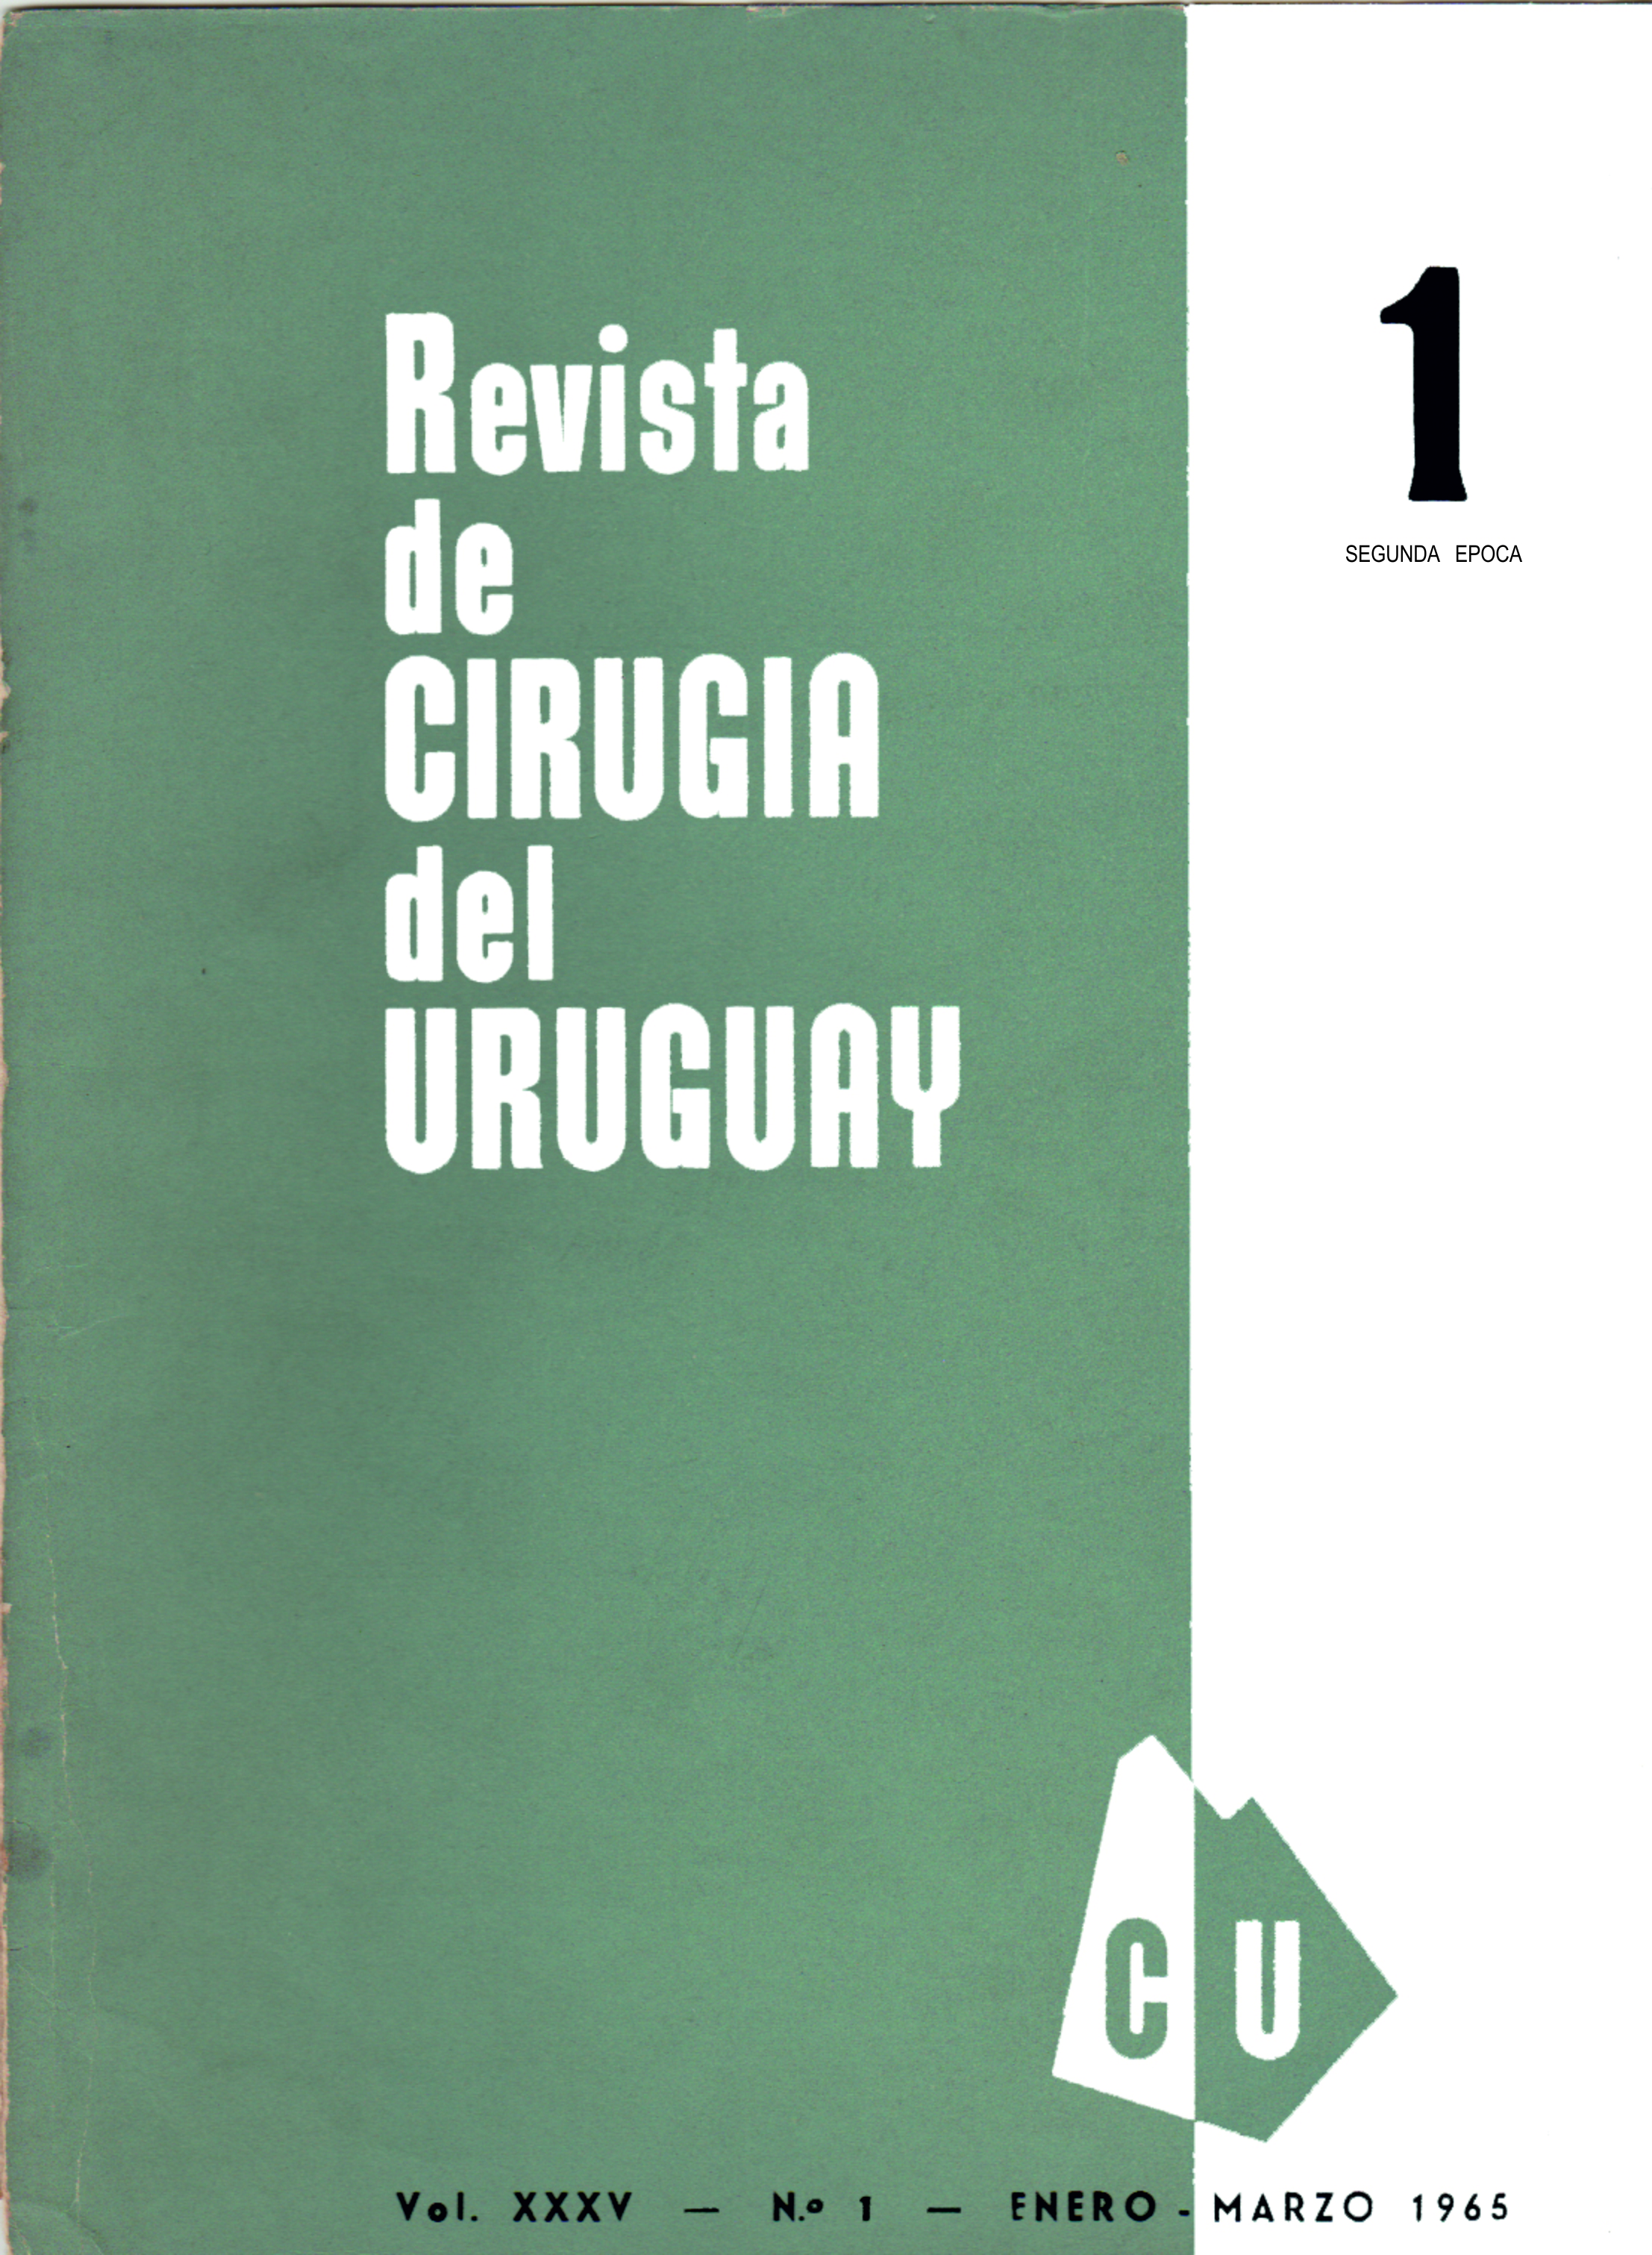 					Ver Vol. 35 Núm. 1 (1965): Revista Cirugía del Uruguay
				